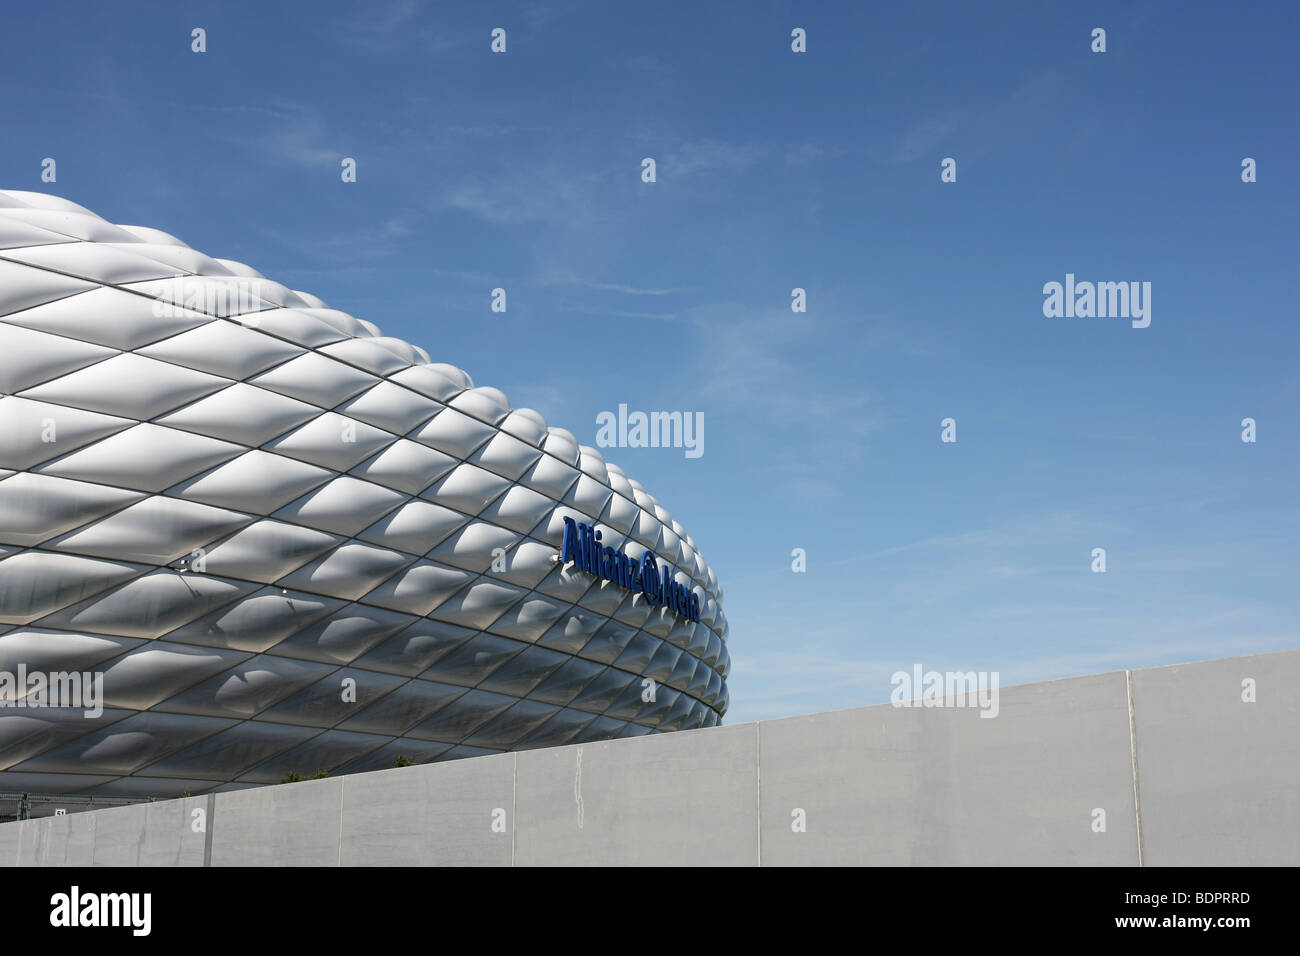 Lo stadio Allianz Arena di Monaco di Baviera, Germania Foto Stock